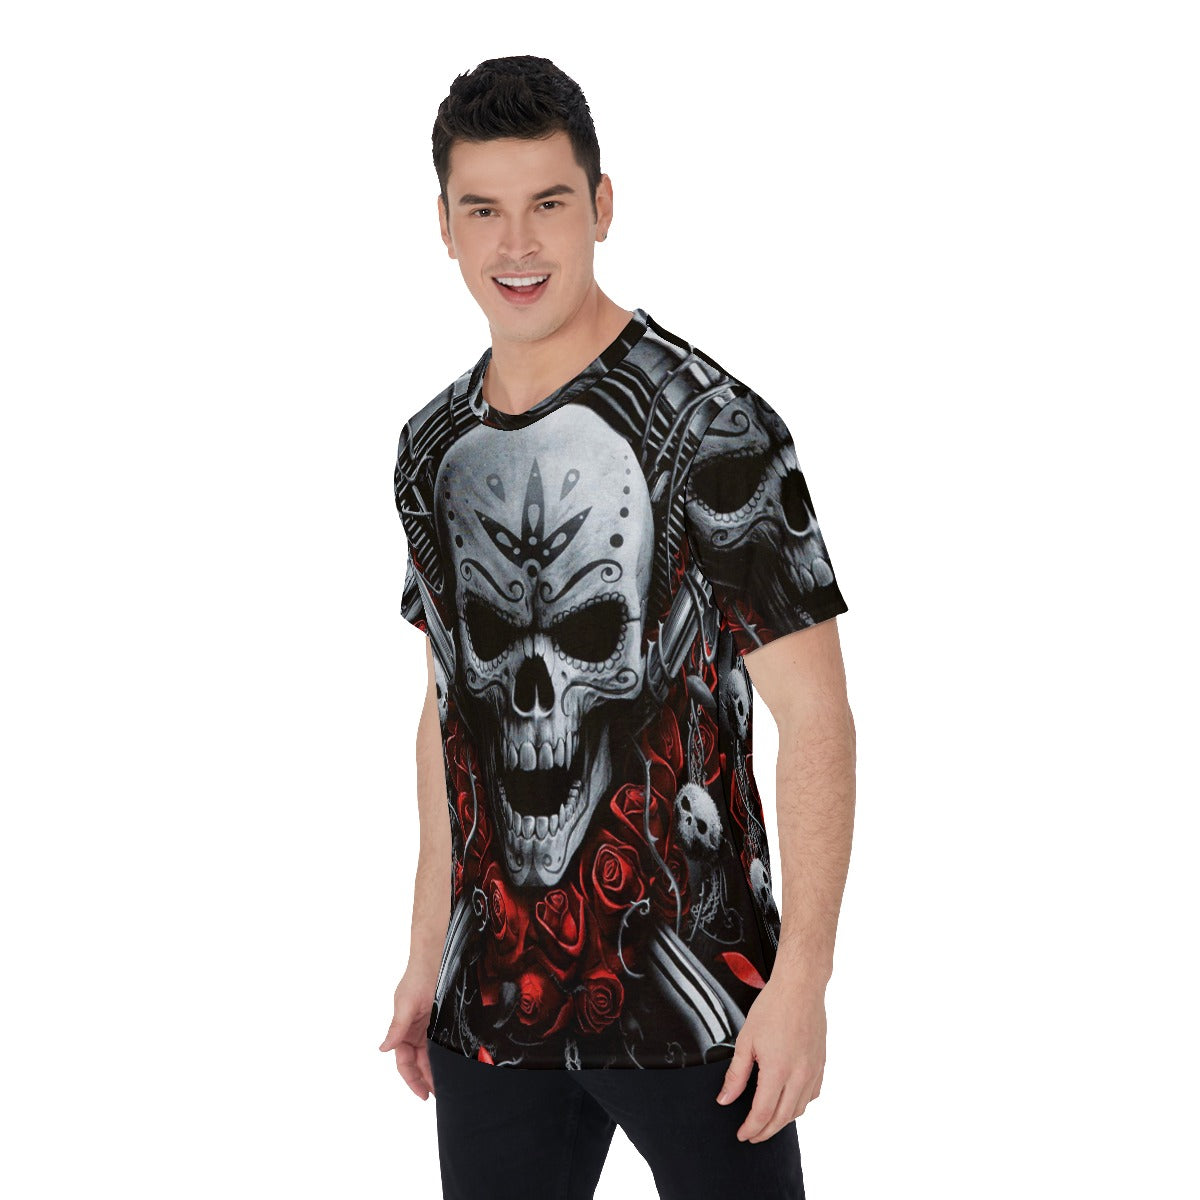 Motorcycle skull biker Men's O-Neck T-Shirt, Biker skull tshirt, Gothic skull Halloween tshirt